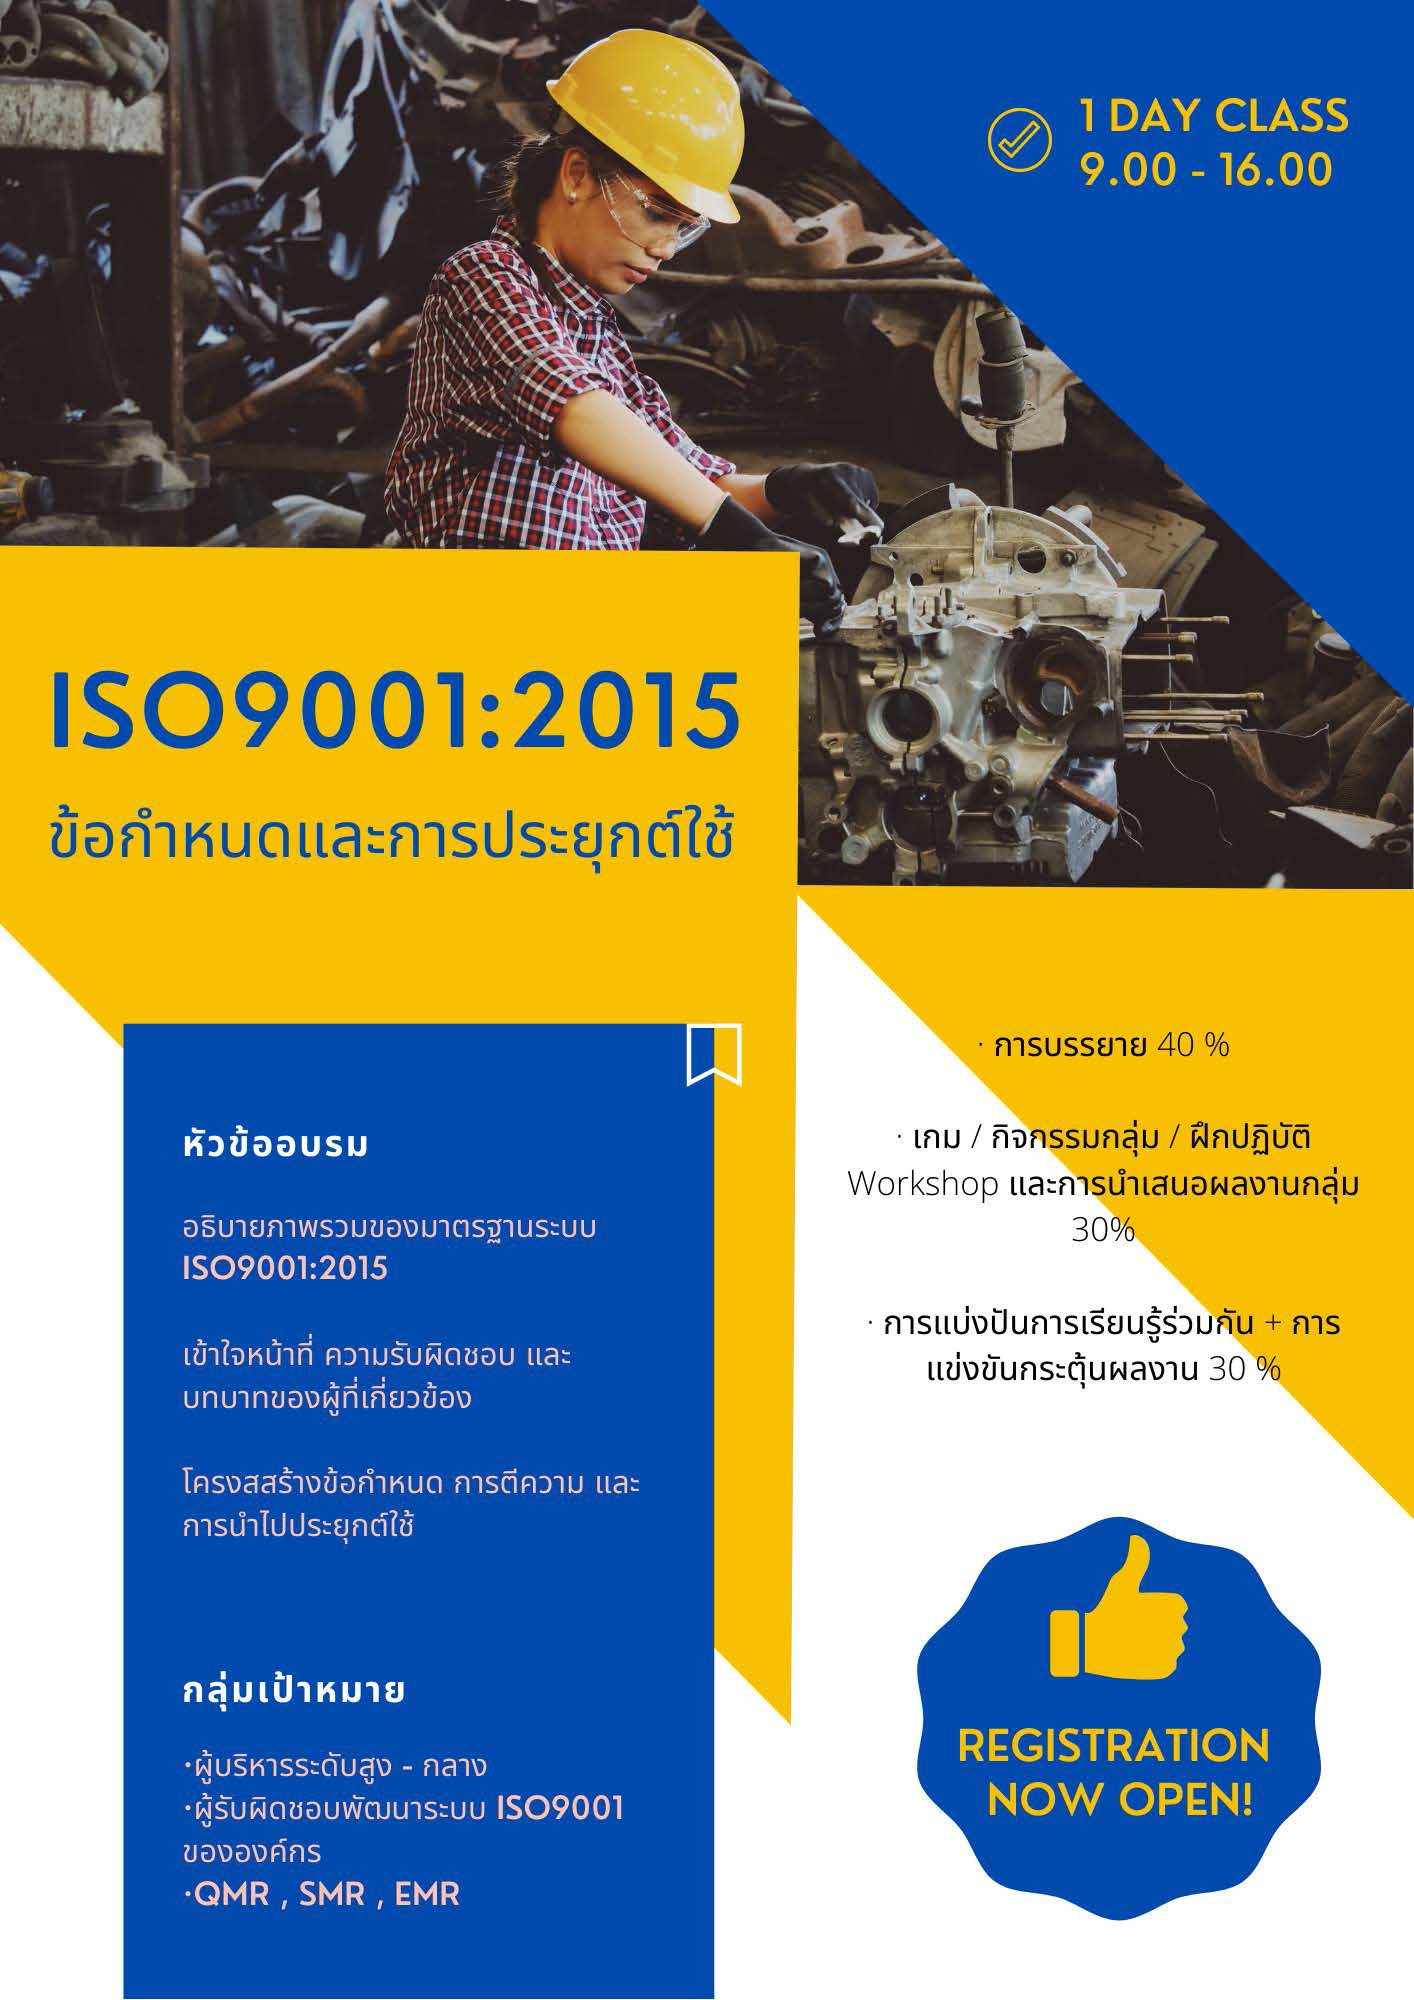 หลักสูตร ข้อกำหนดและการประยุกต์ใช้ ISO9001:2015